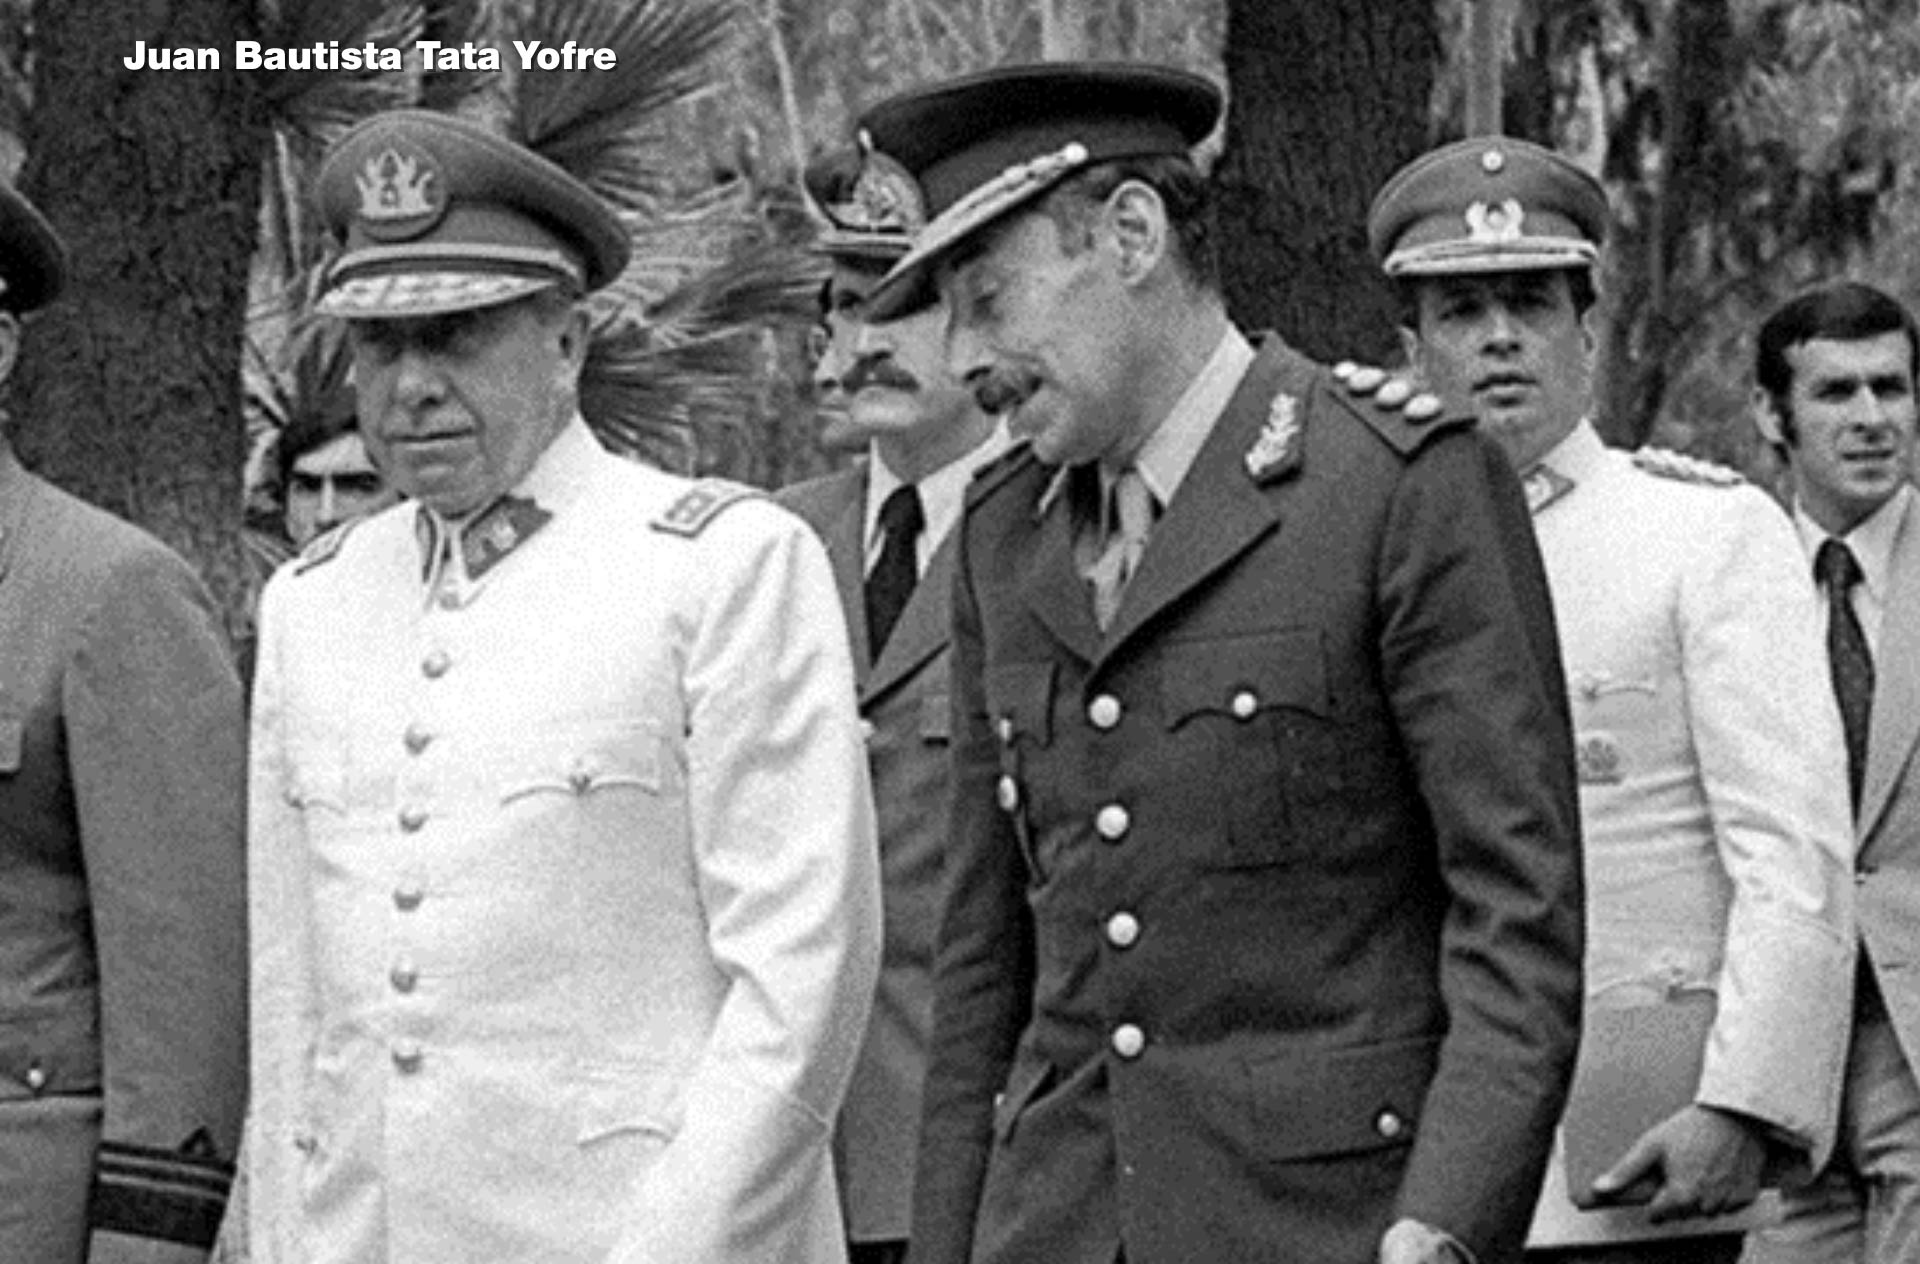 Augusto Pinochet y Jorge Videla se habían encontrado en El Plumerillo en busca de una solución al conflicto, pero no hubo acuerdo tras horas de reuniones